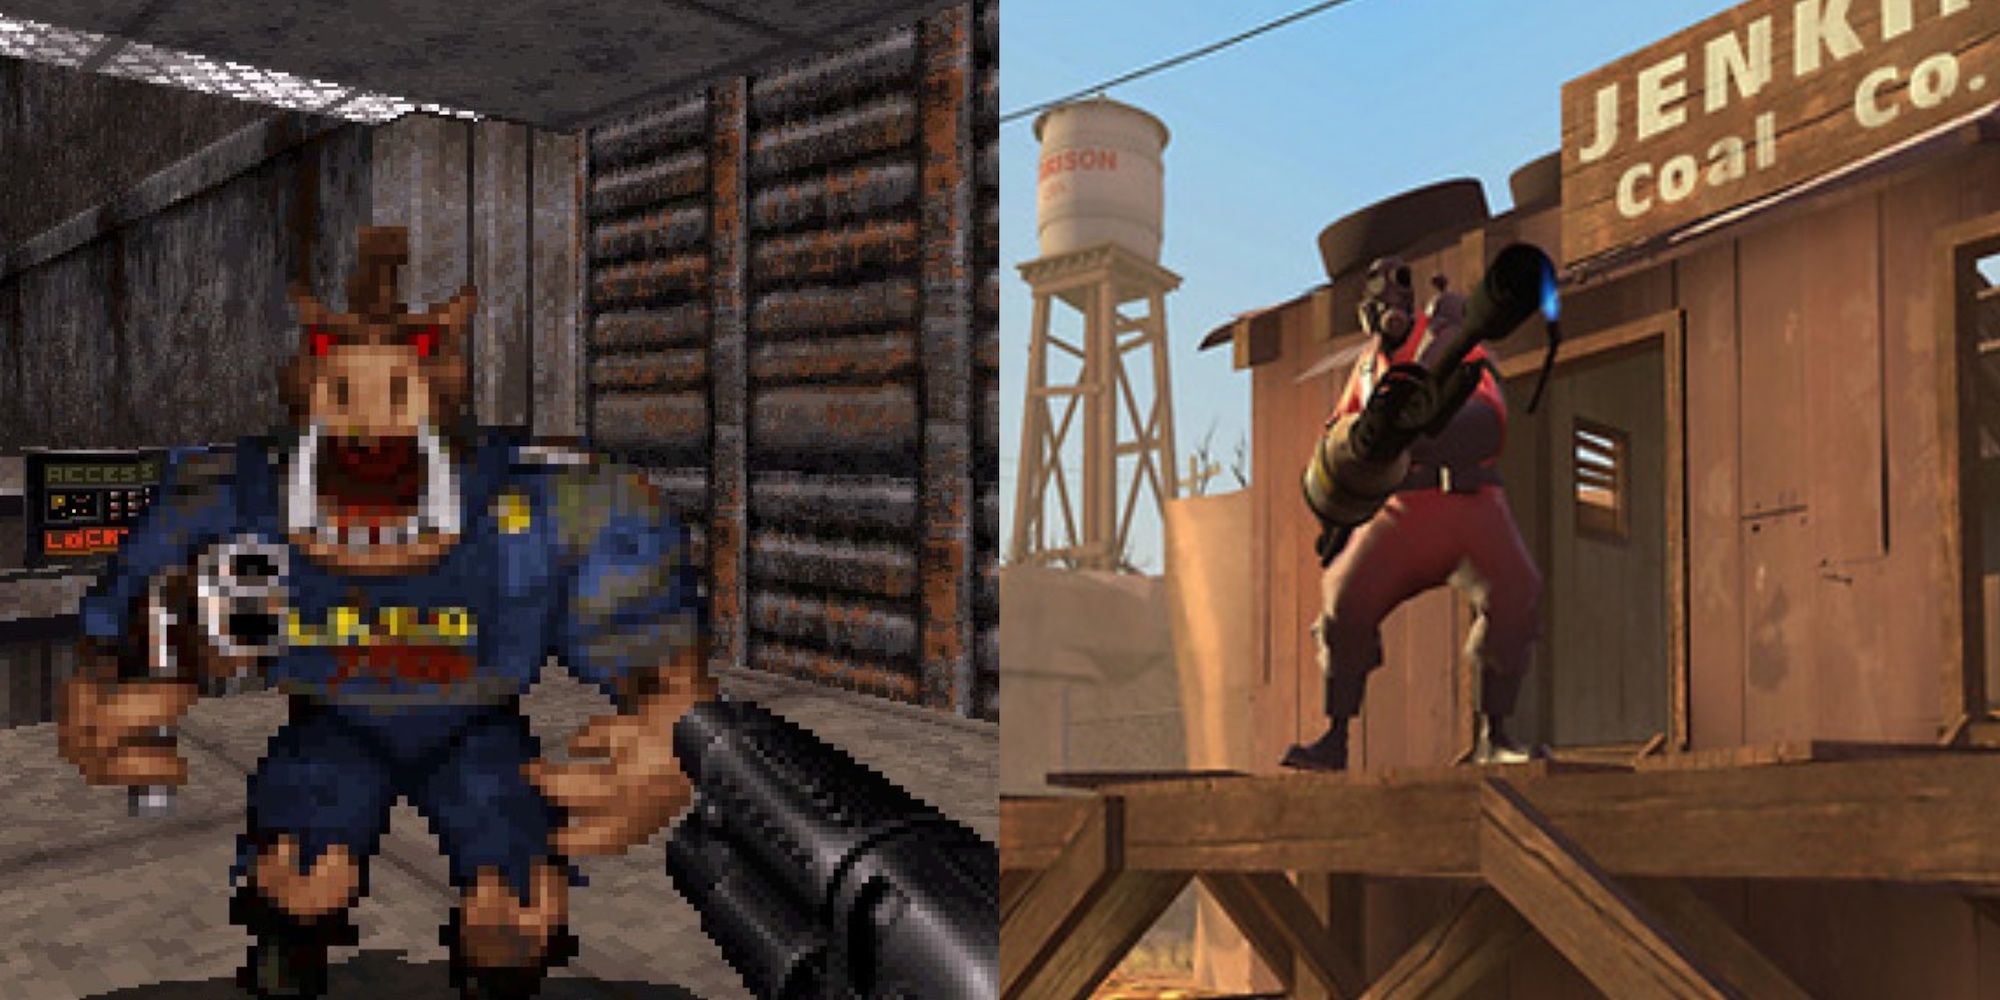 Duke Nukem 3D on the left, Team Fortress 2 on the right